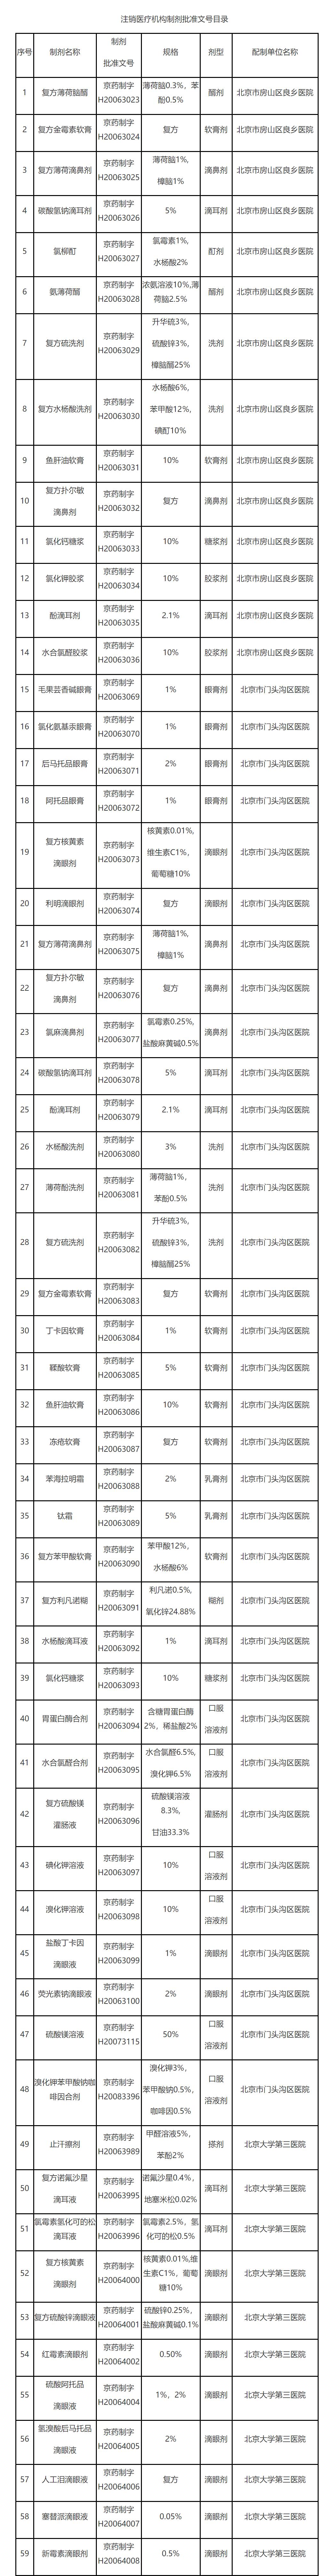 北京市药监局注销的112个医疗机构制剂批准文号目录。